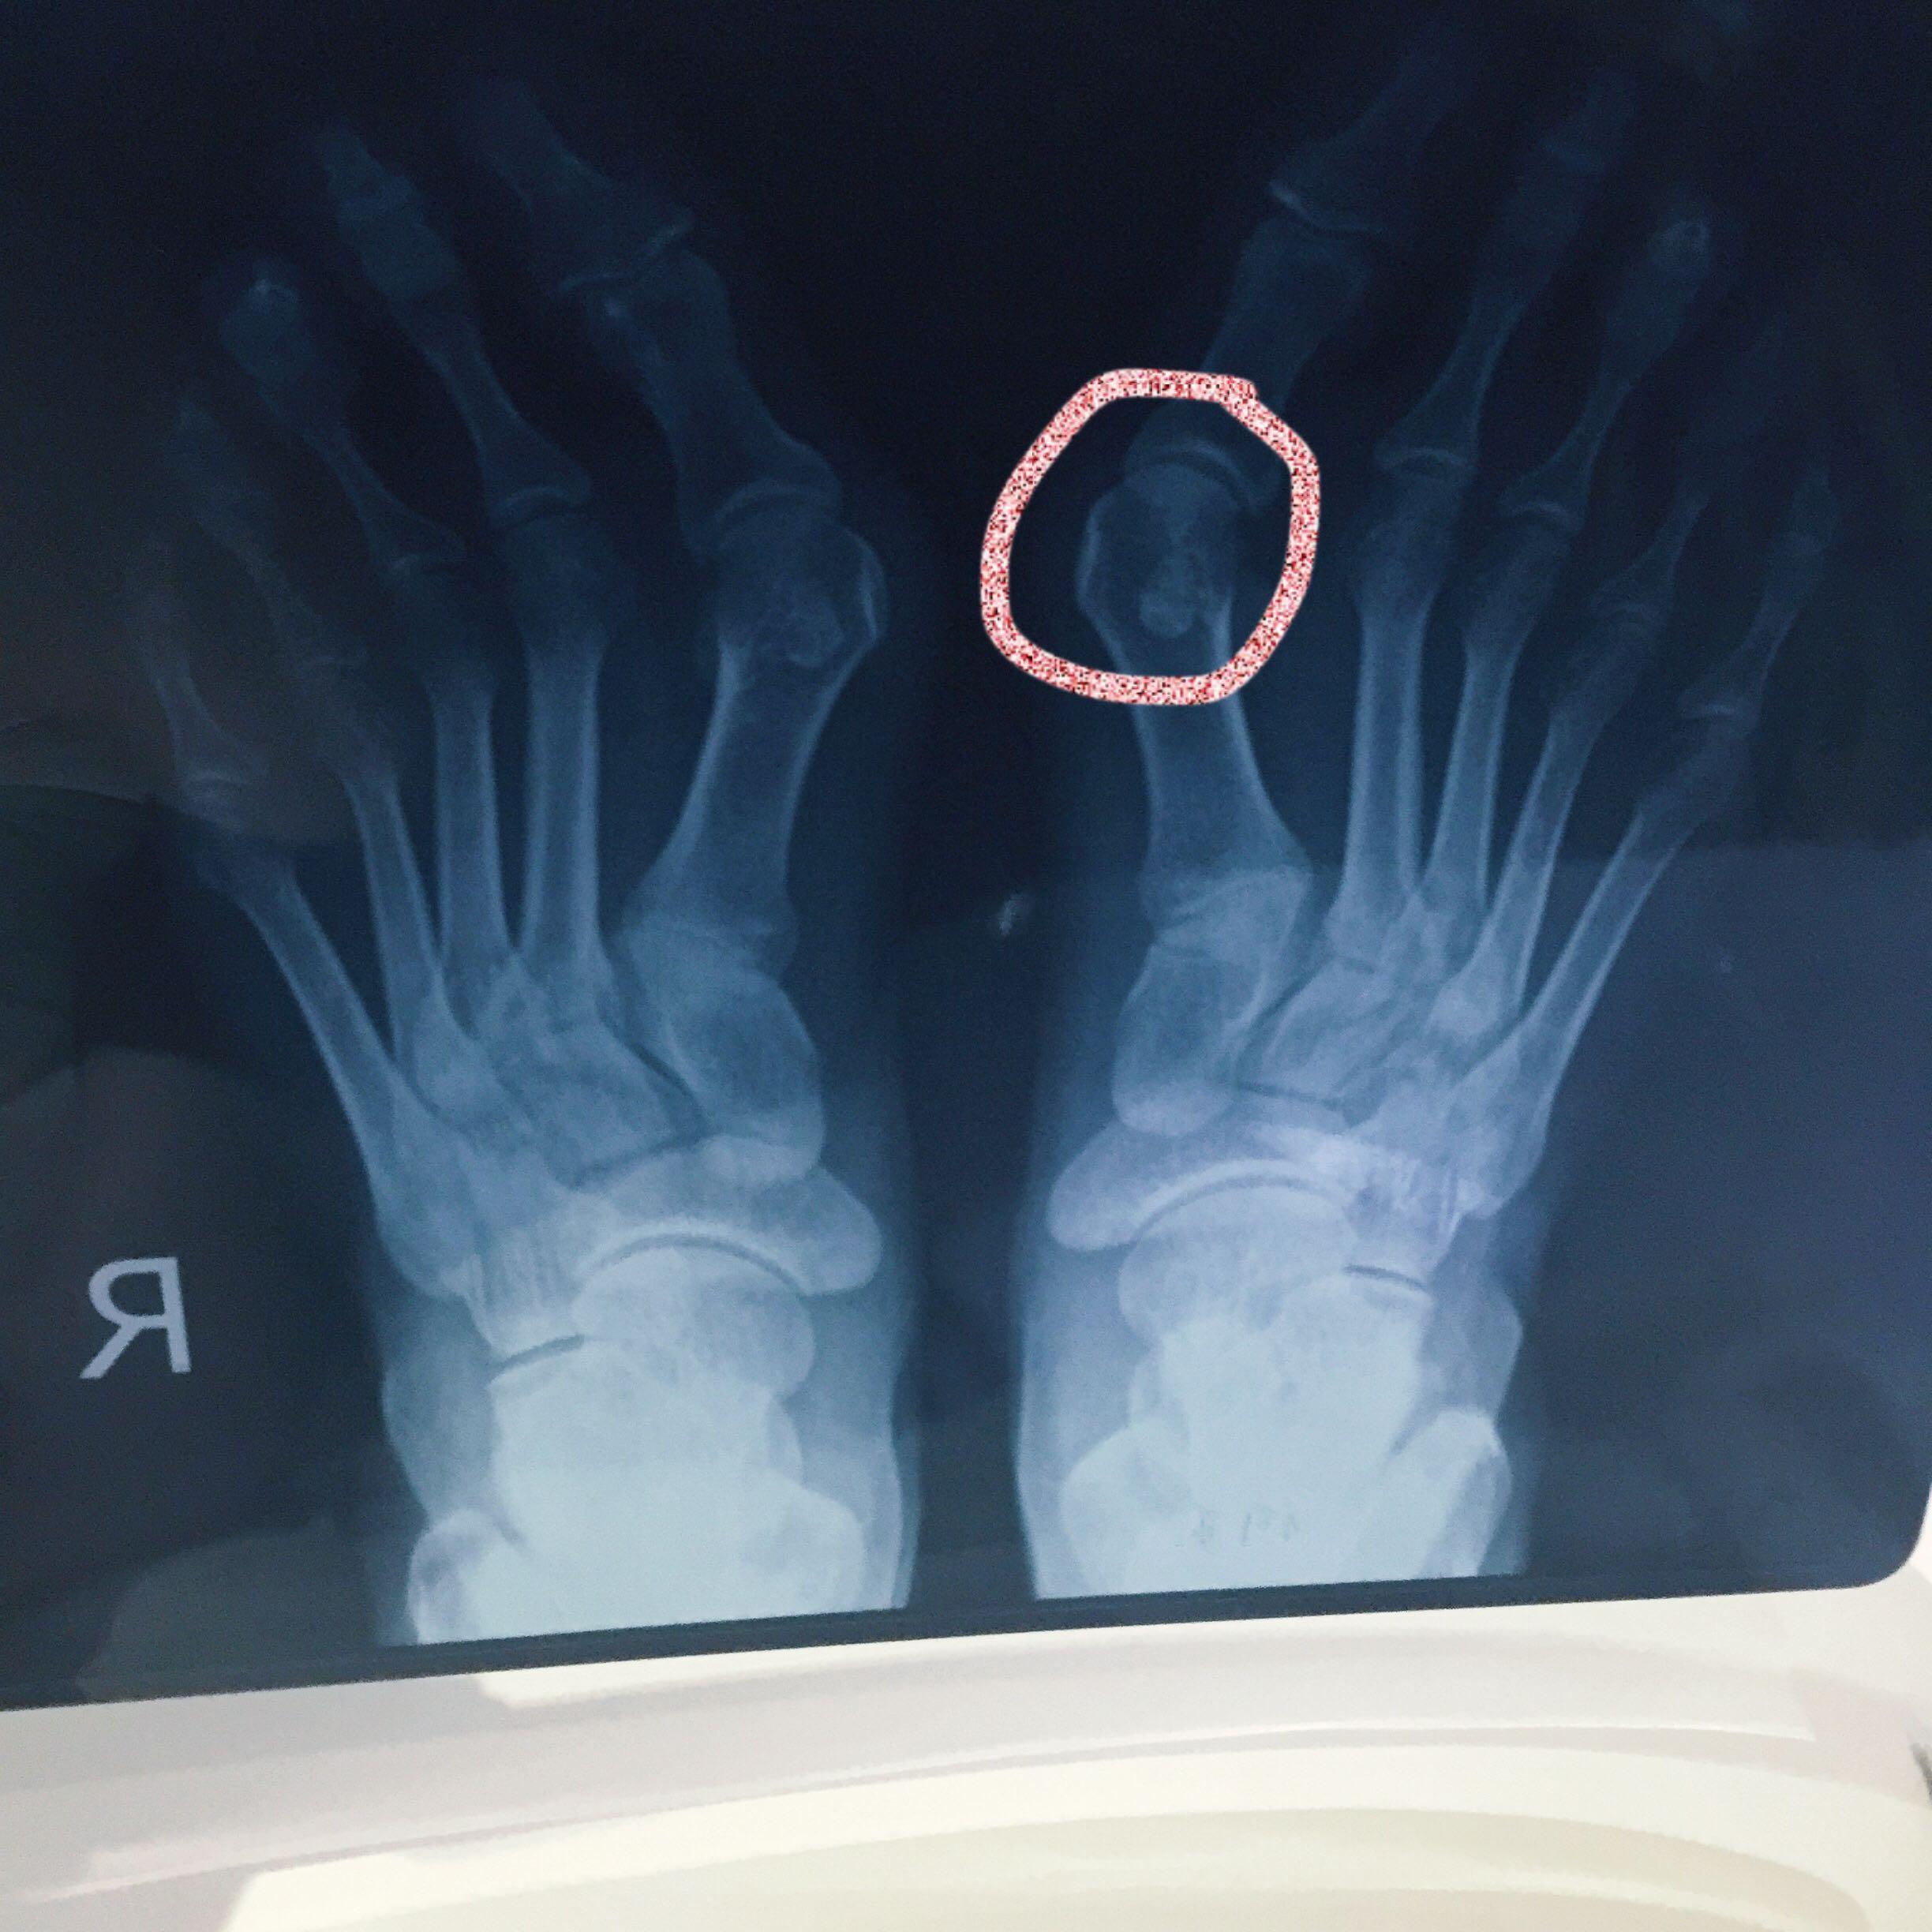 右手第五掌骨骨折，手术复位并植入钢钉固定，一月拆石膏，40天拔钢钉，现在44天，小拇指无法顺利弯曲。_百度知道